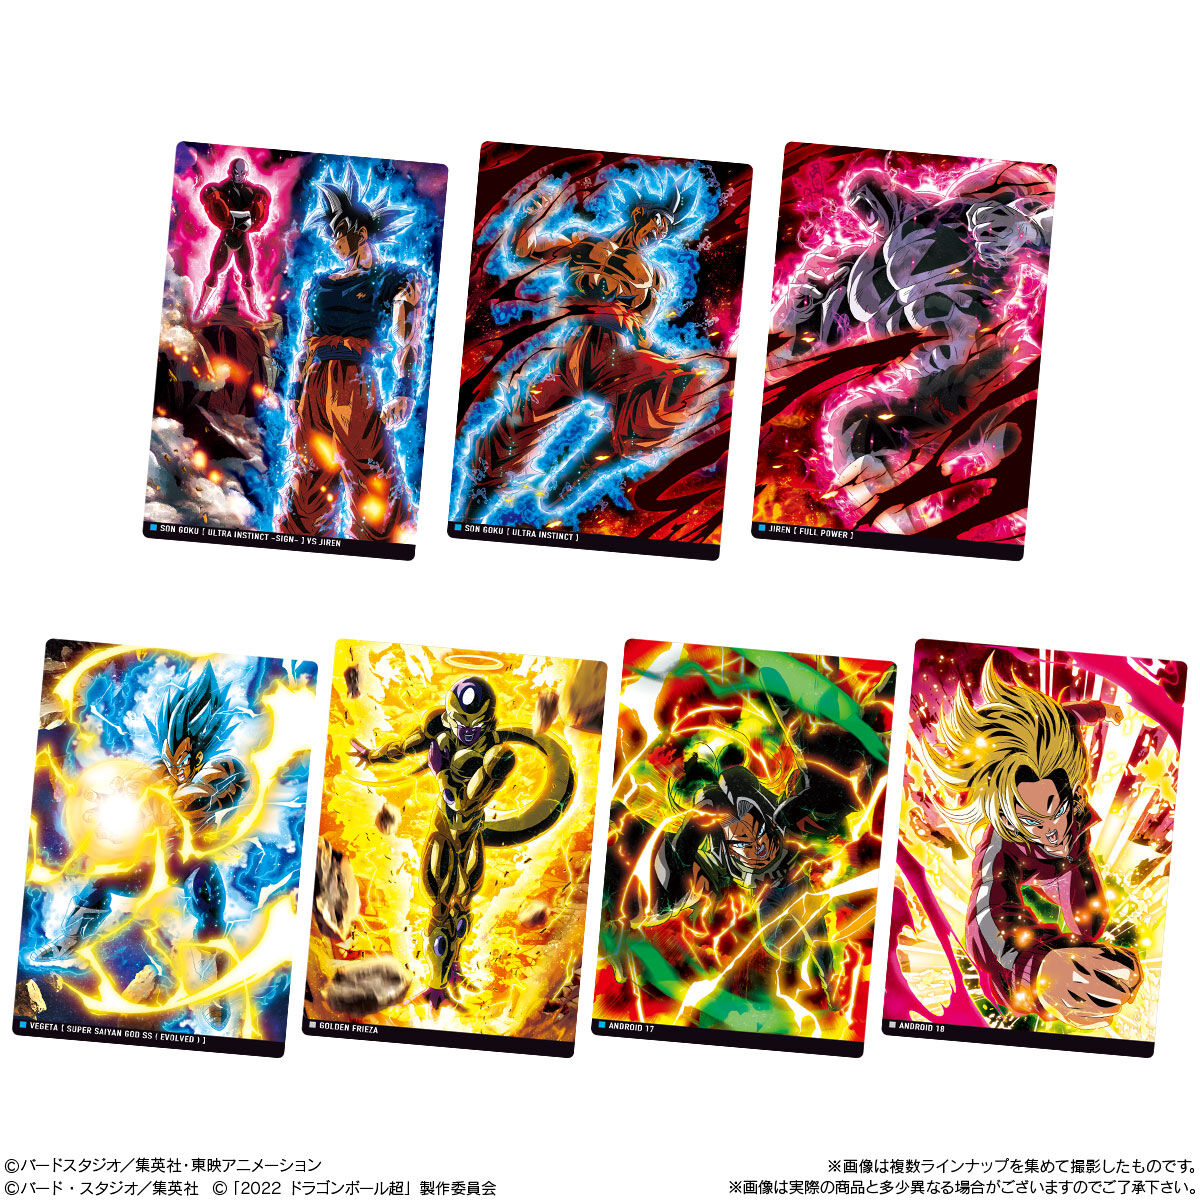 【美品】イタジャガ ドラゴンボール Vol.3 全31種フルコンプリートセット